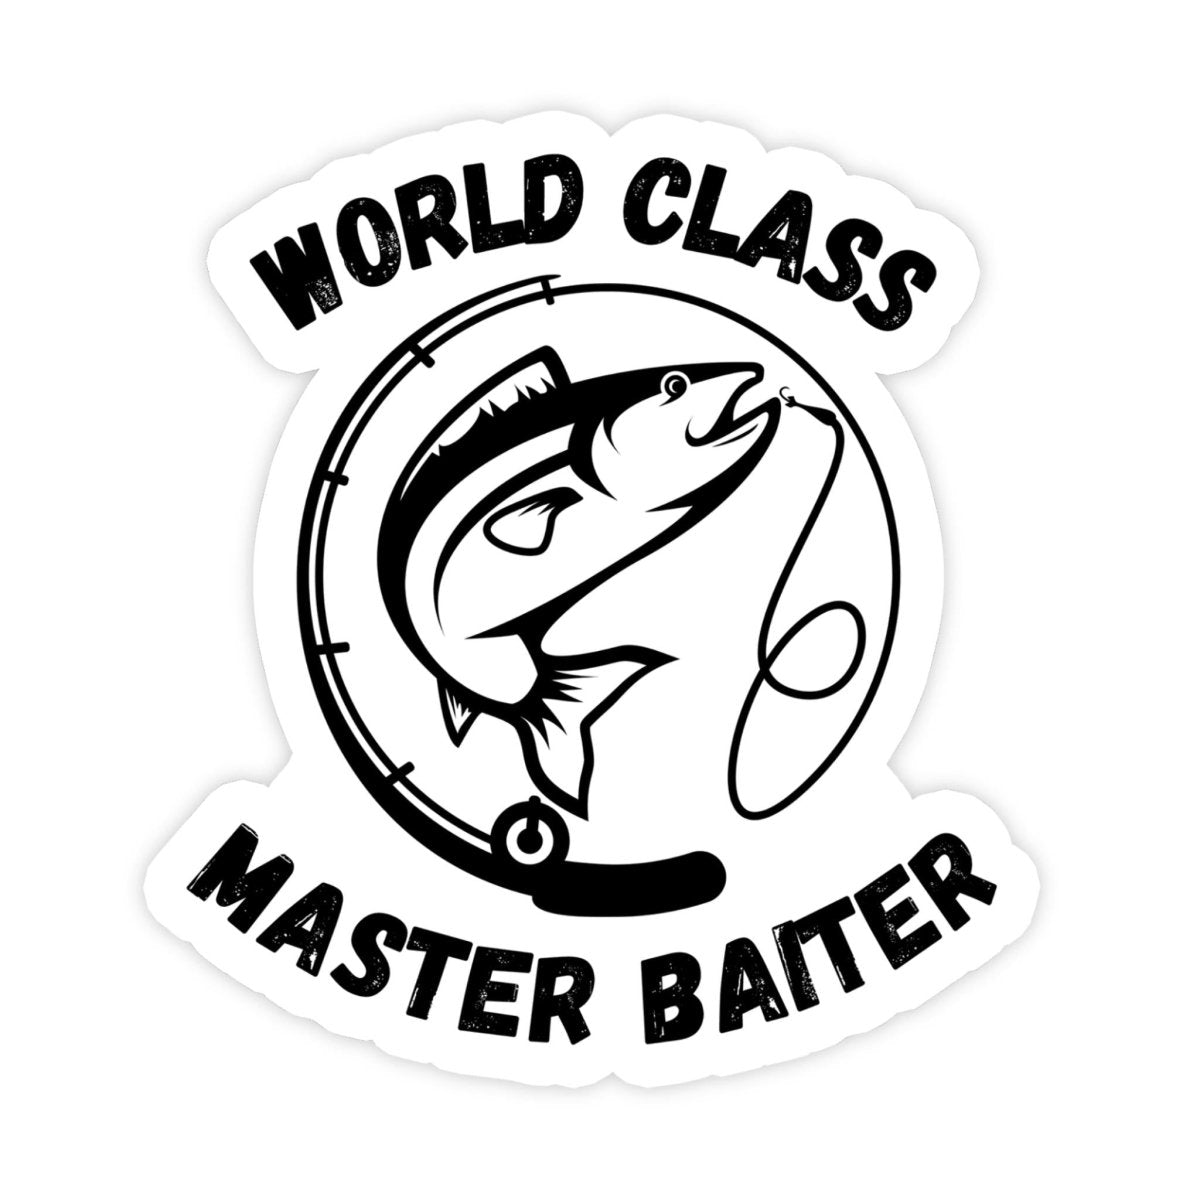 World Class Master Baiter Fishing Meme Sticker - stickerbullWorld Class Master Baiter Fishing Meme StickerRetail StickerstickerbullstickerbullTaylor_FishMasterBait [#21]World Class Master Baiter Fishing Meme Sticker